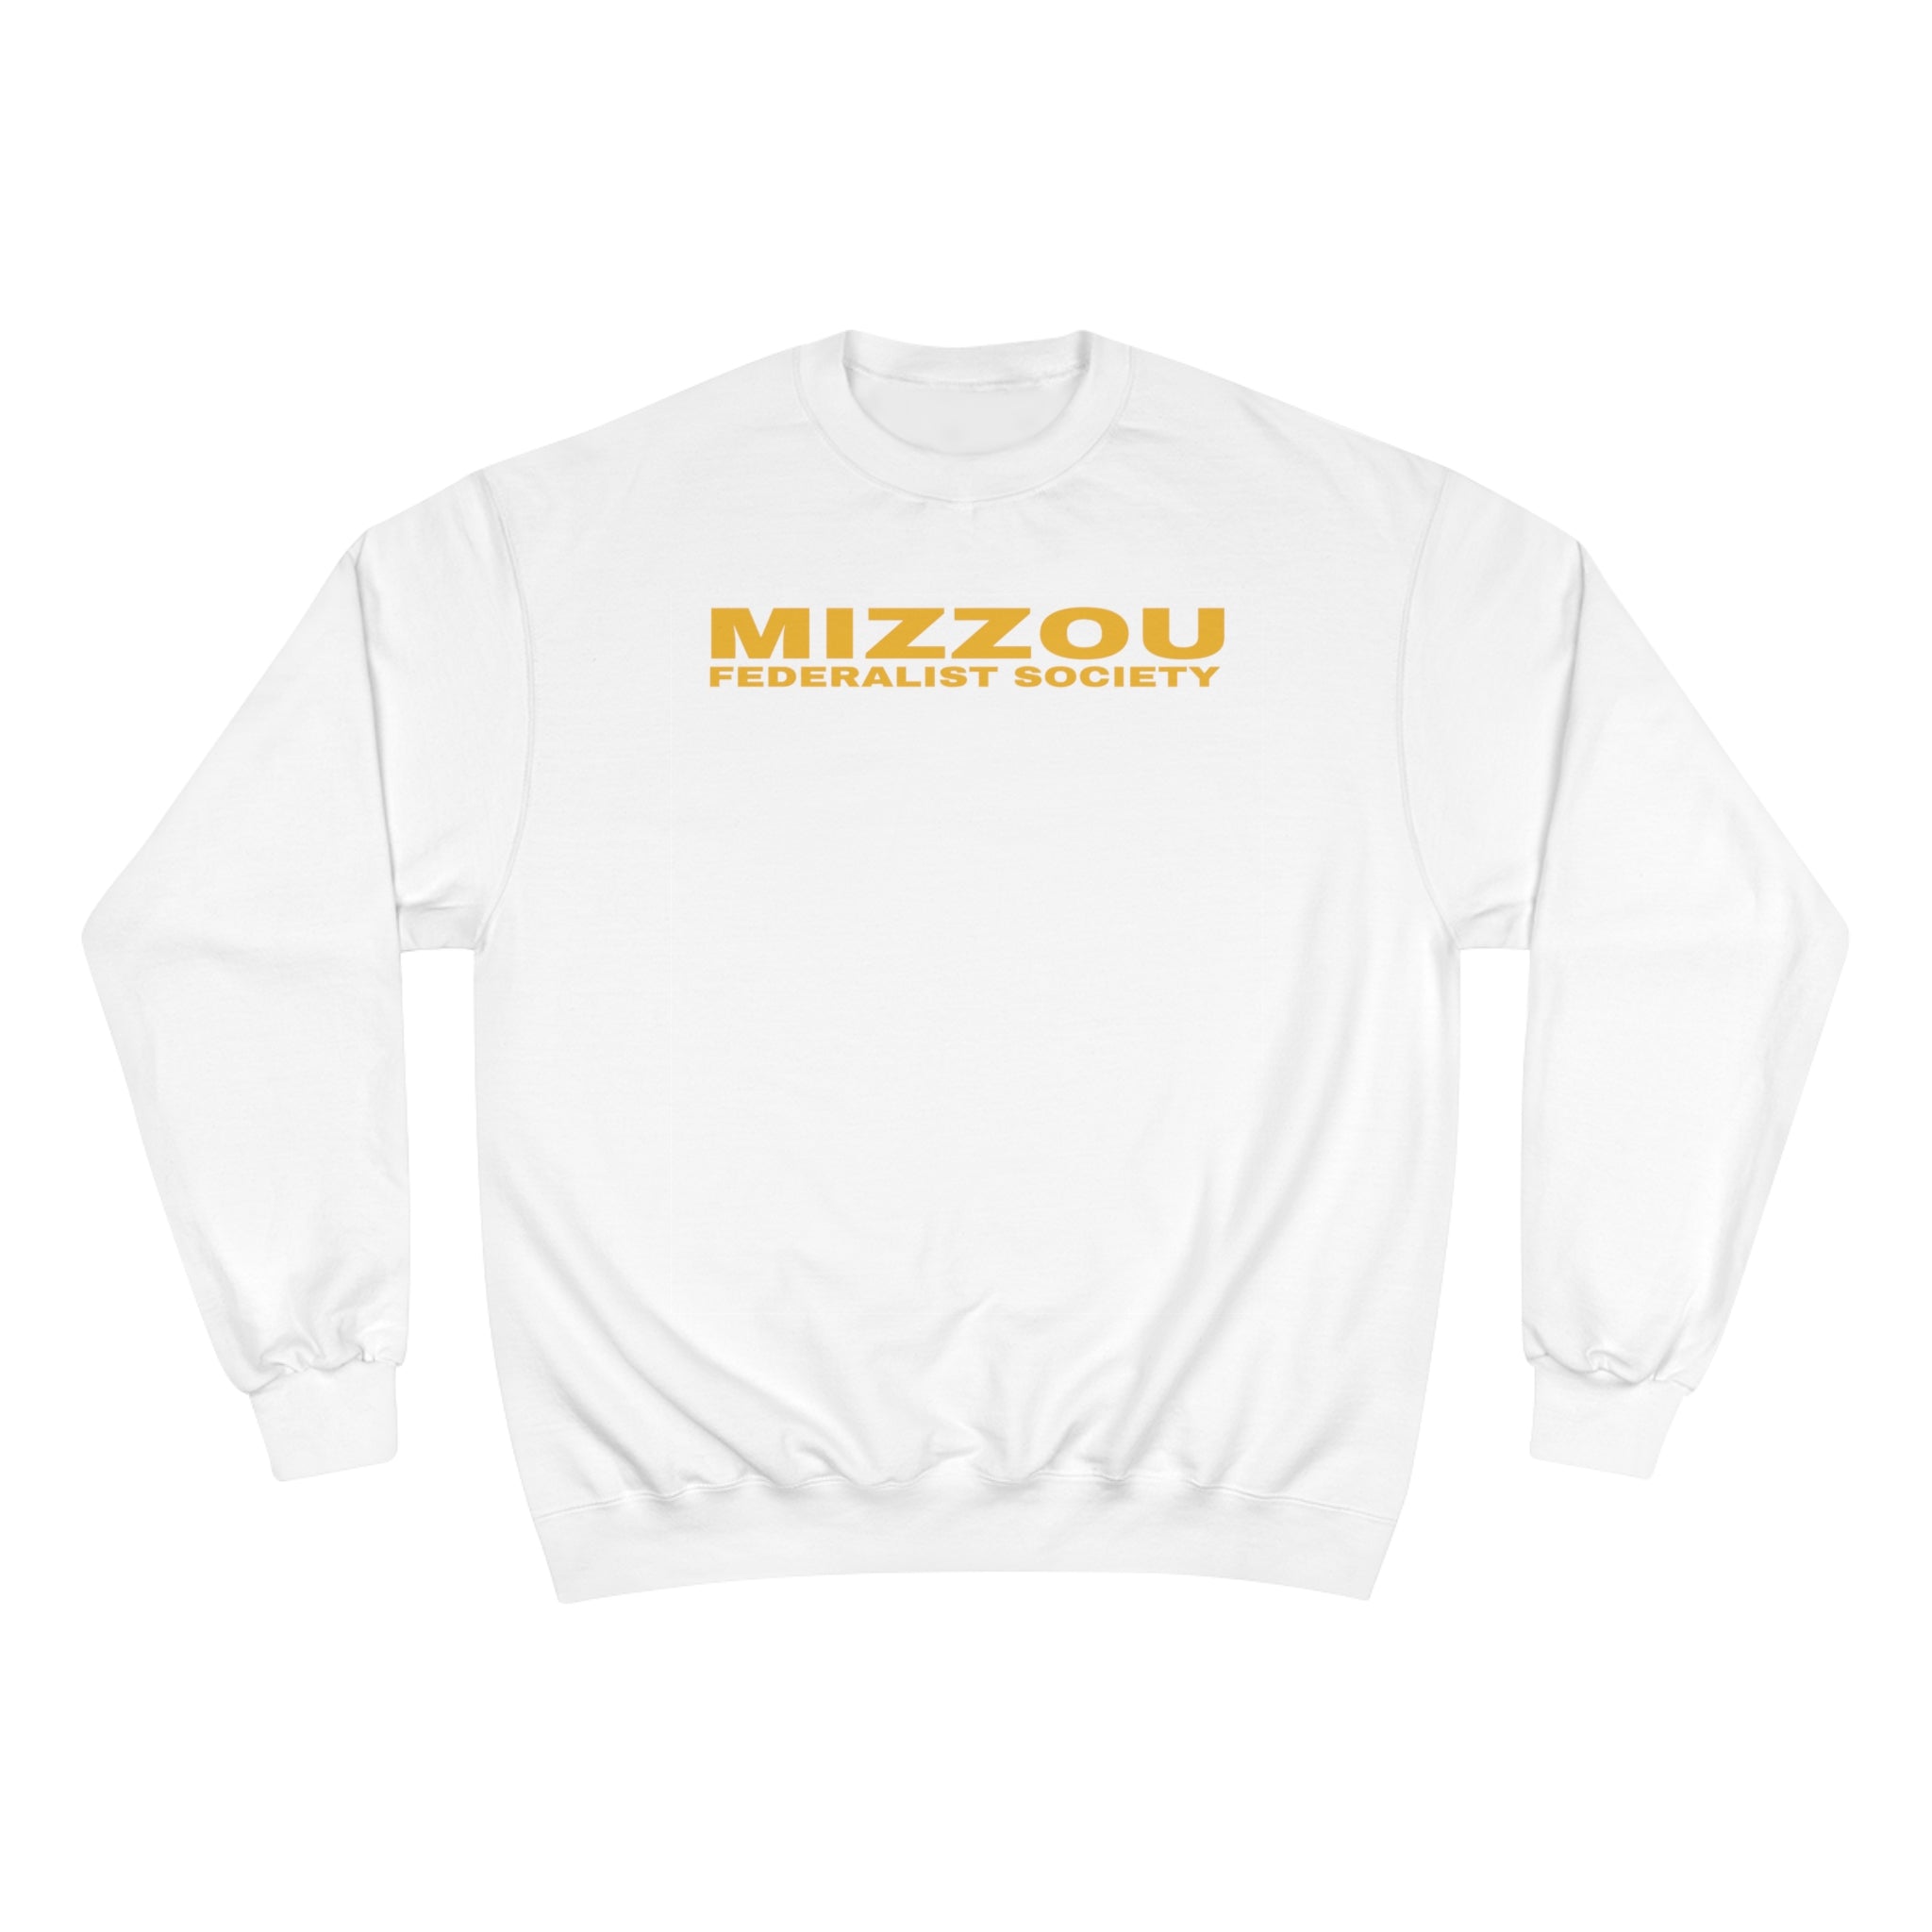 Champion Sweatshirt Long Logo (Mizzou Fed Soc)